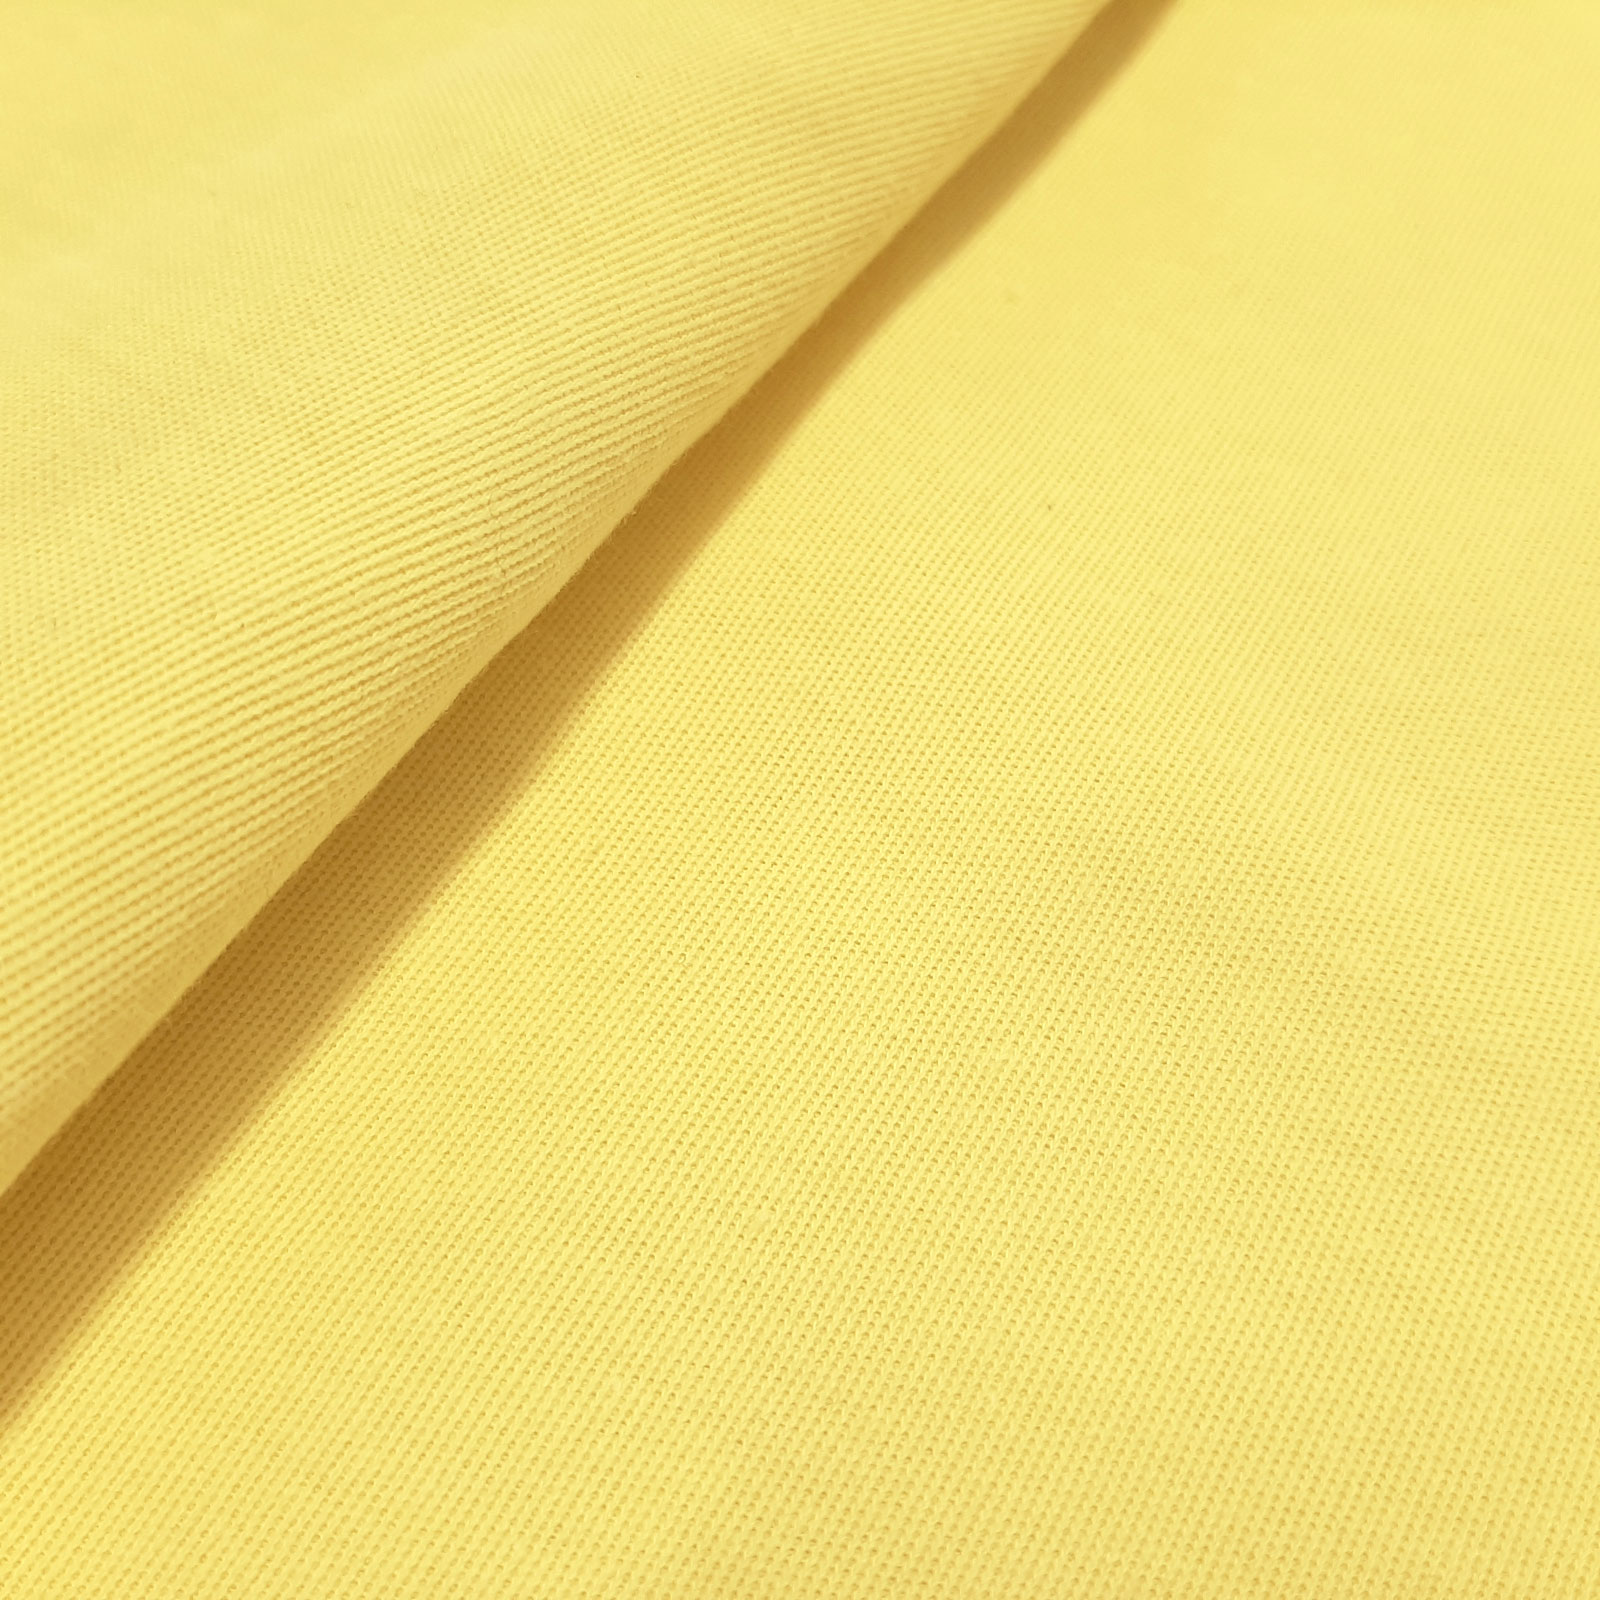 Herculette - Tessuto a maglia interlock in aramide Kevlar® per la protezione dal taglio - elastico